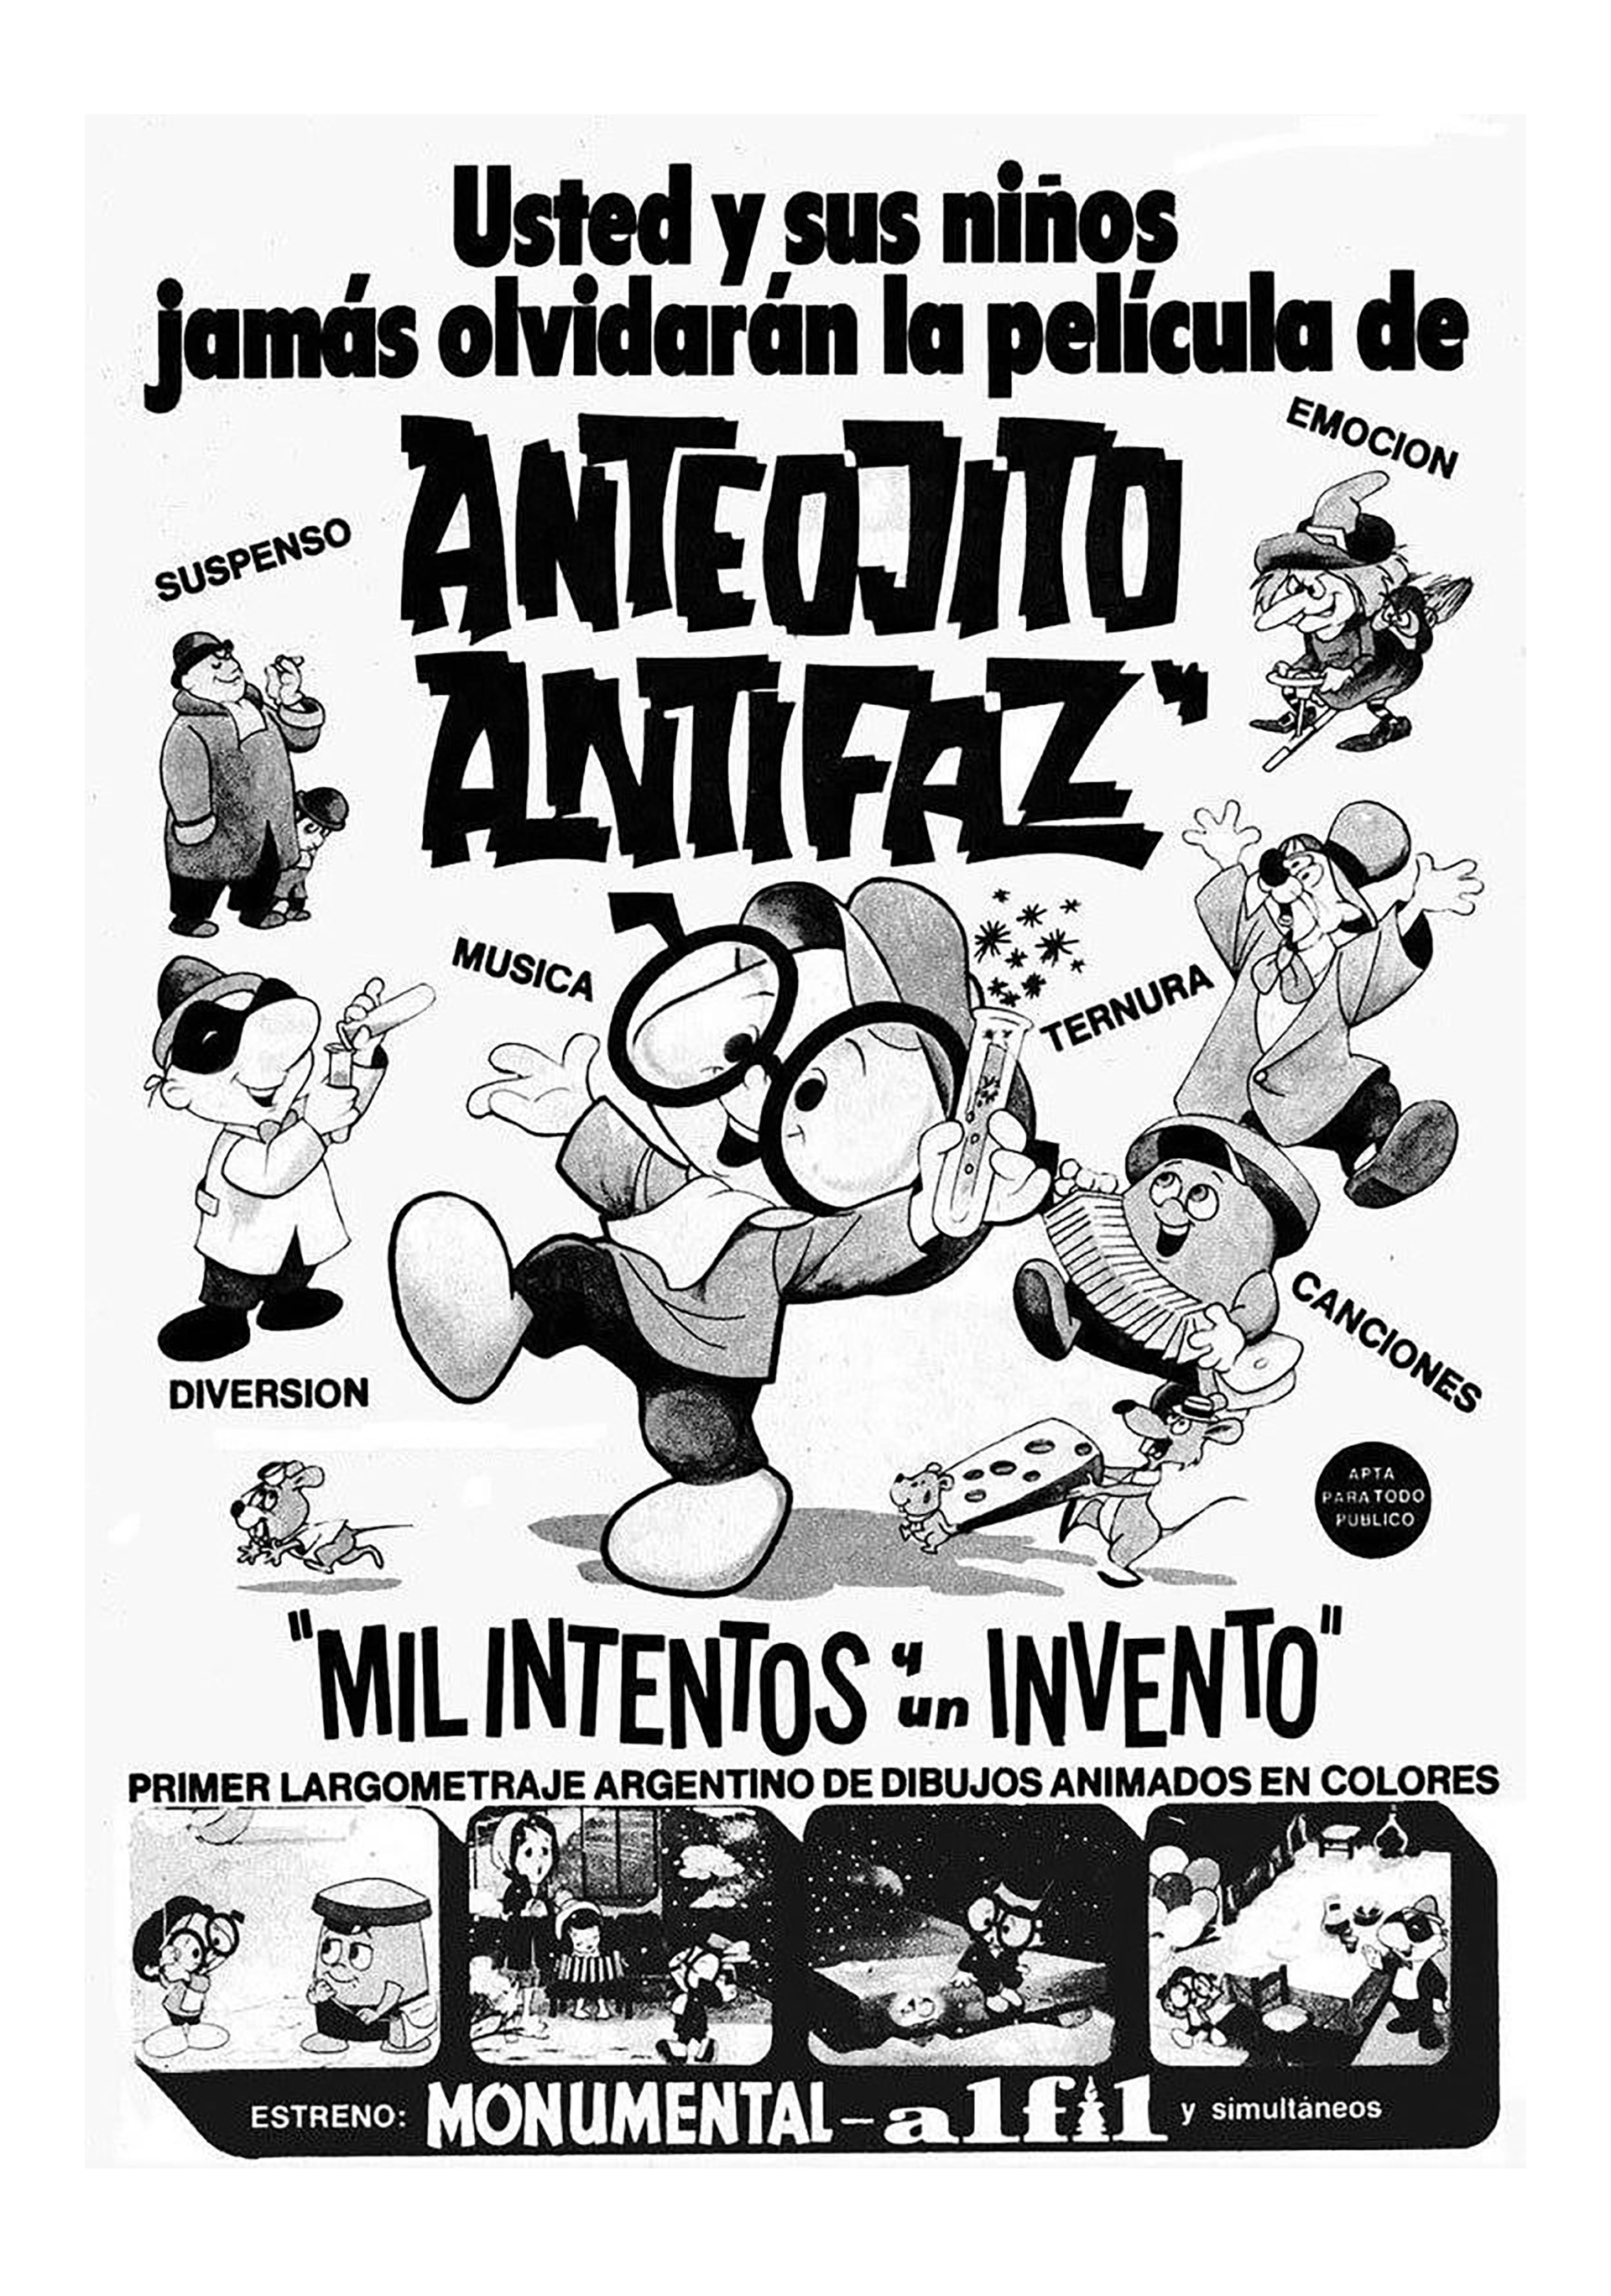 Mil intentos y un invento fue el primer film animado de García Ferré, y el primero animado en colores de la cinematografía argentina. Para desembarcar en el nuevo medio utilizó a sus dos personajes más conocidos hasta el momento: Anteojito y Antifaz